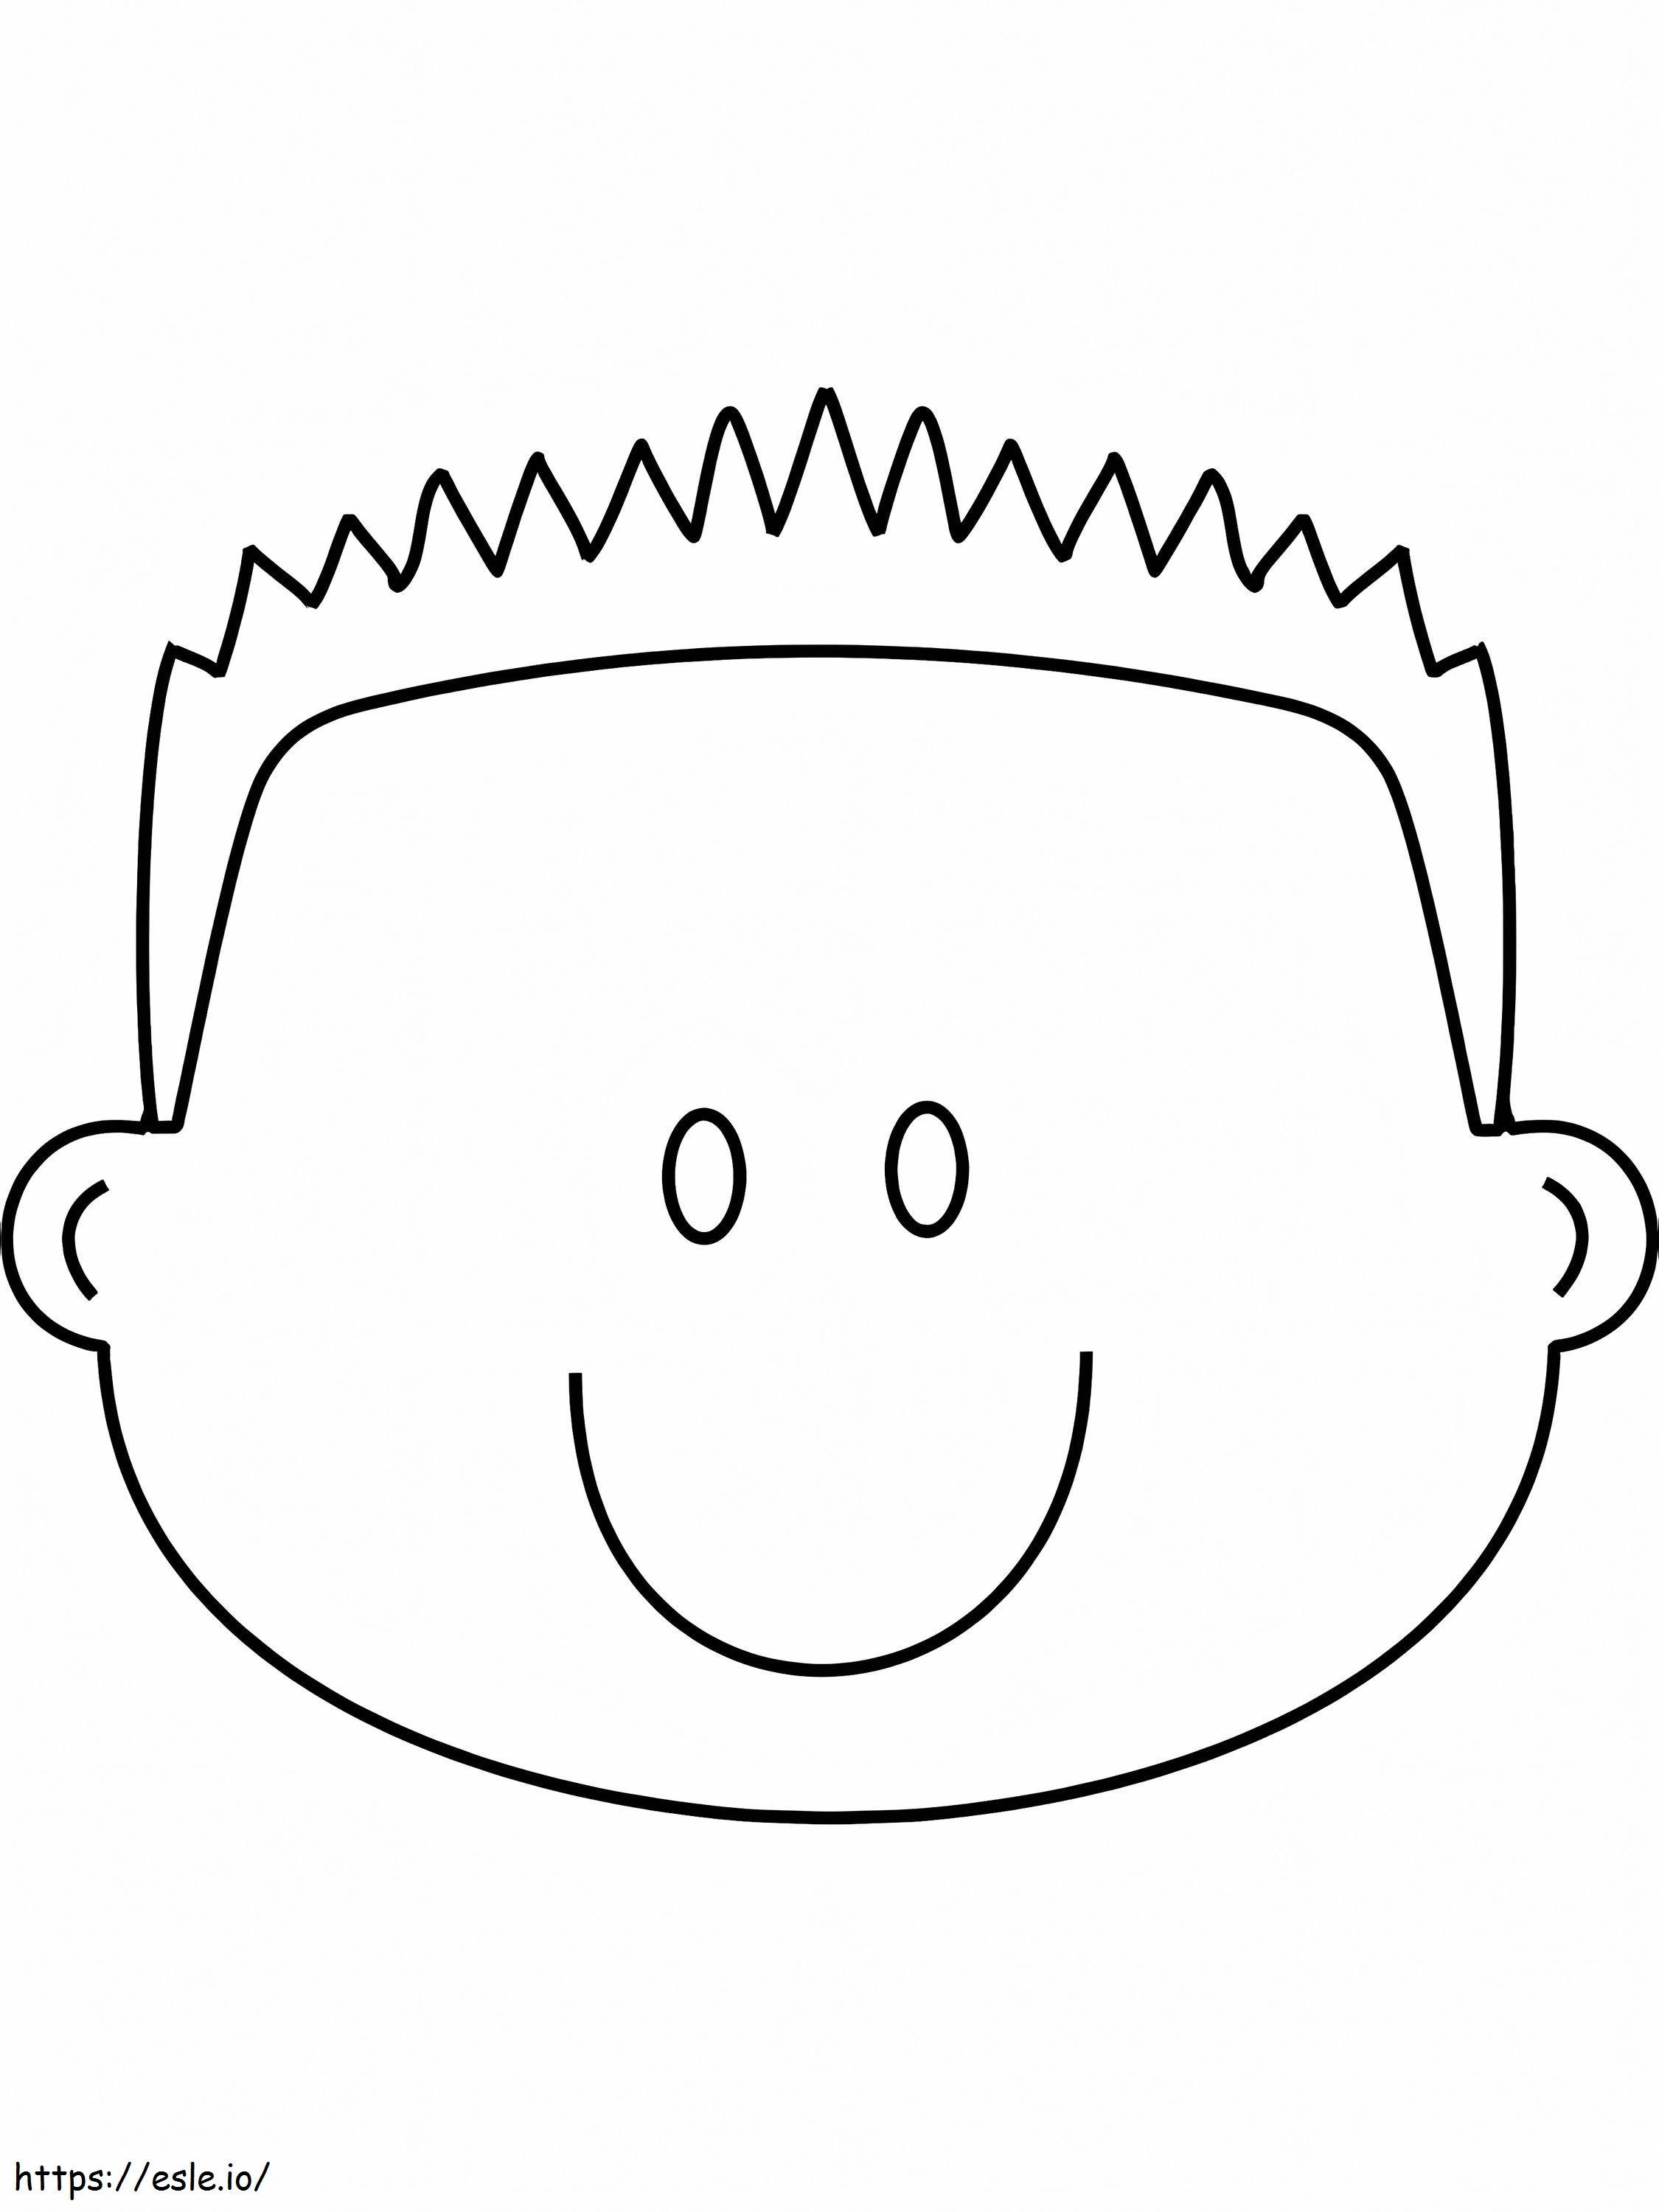 Kinder-Smiley-Gesicht ausmalbilder